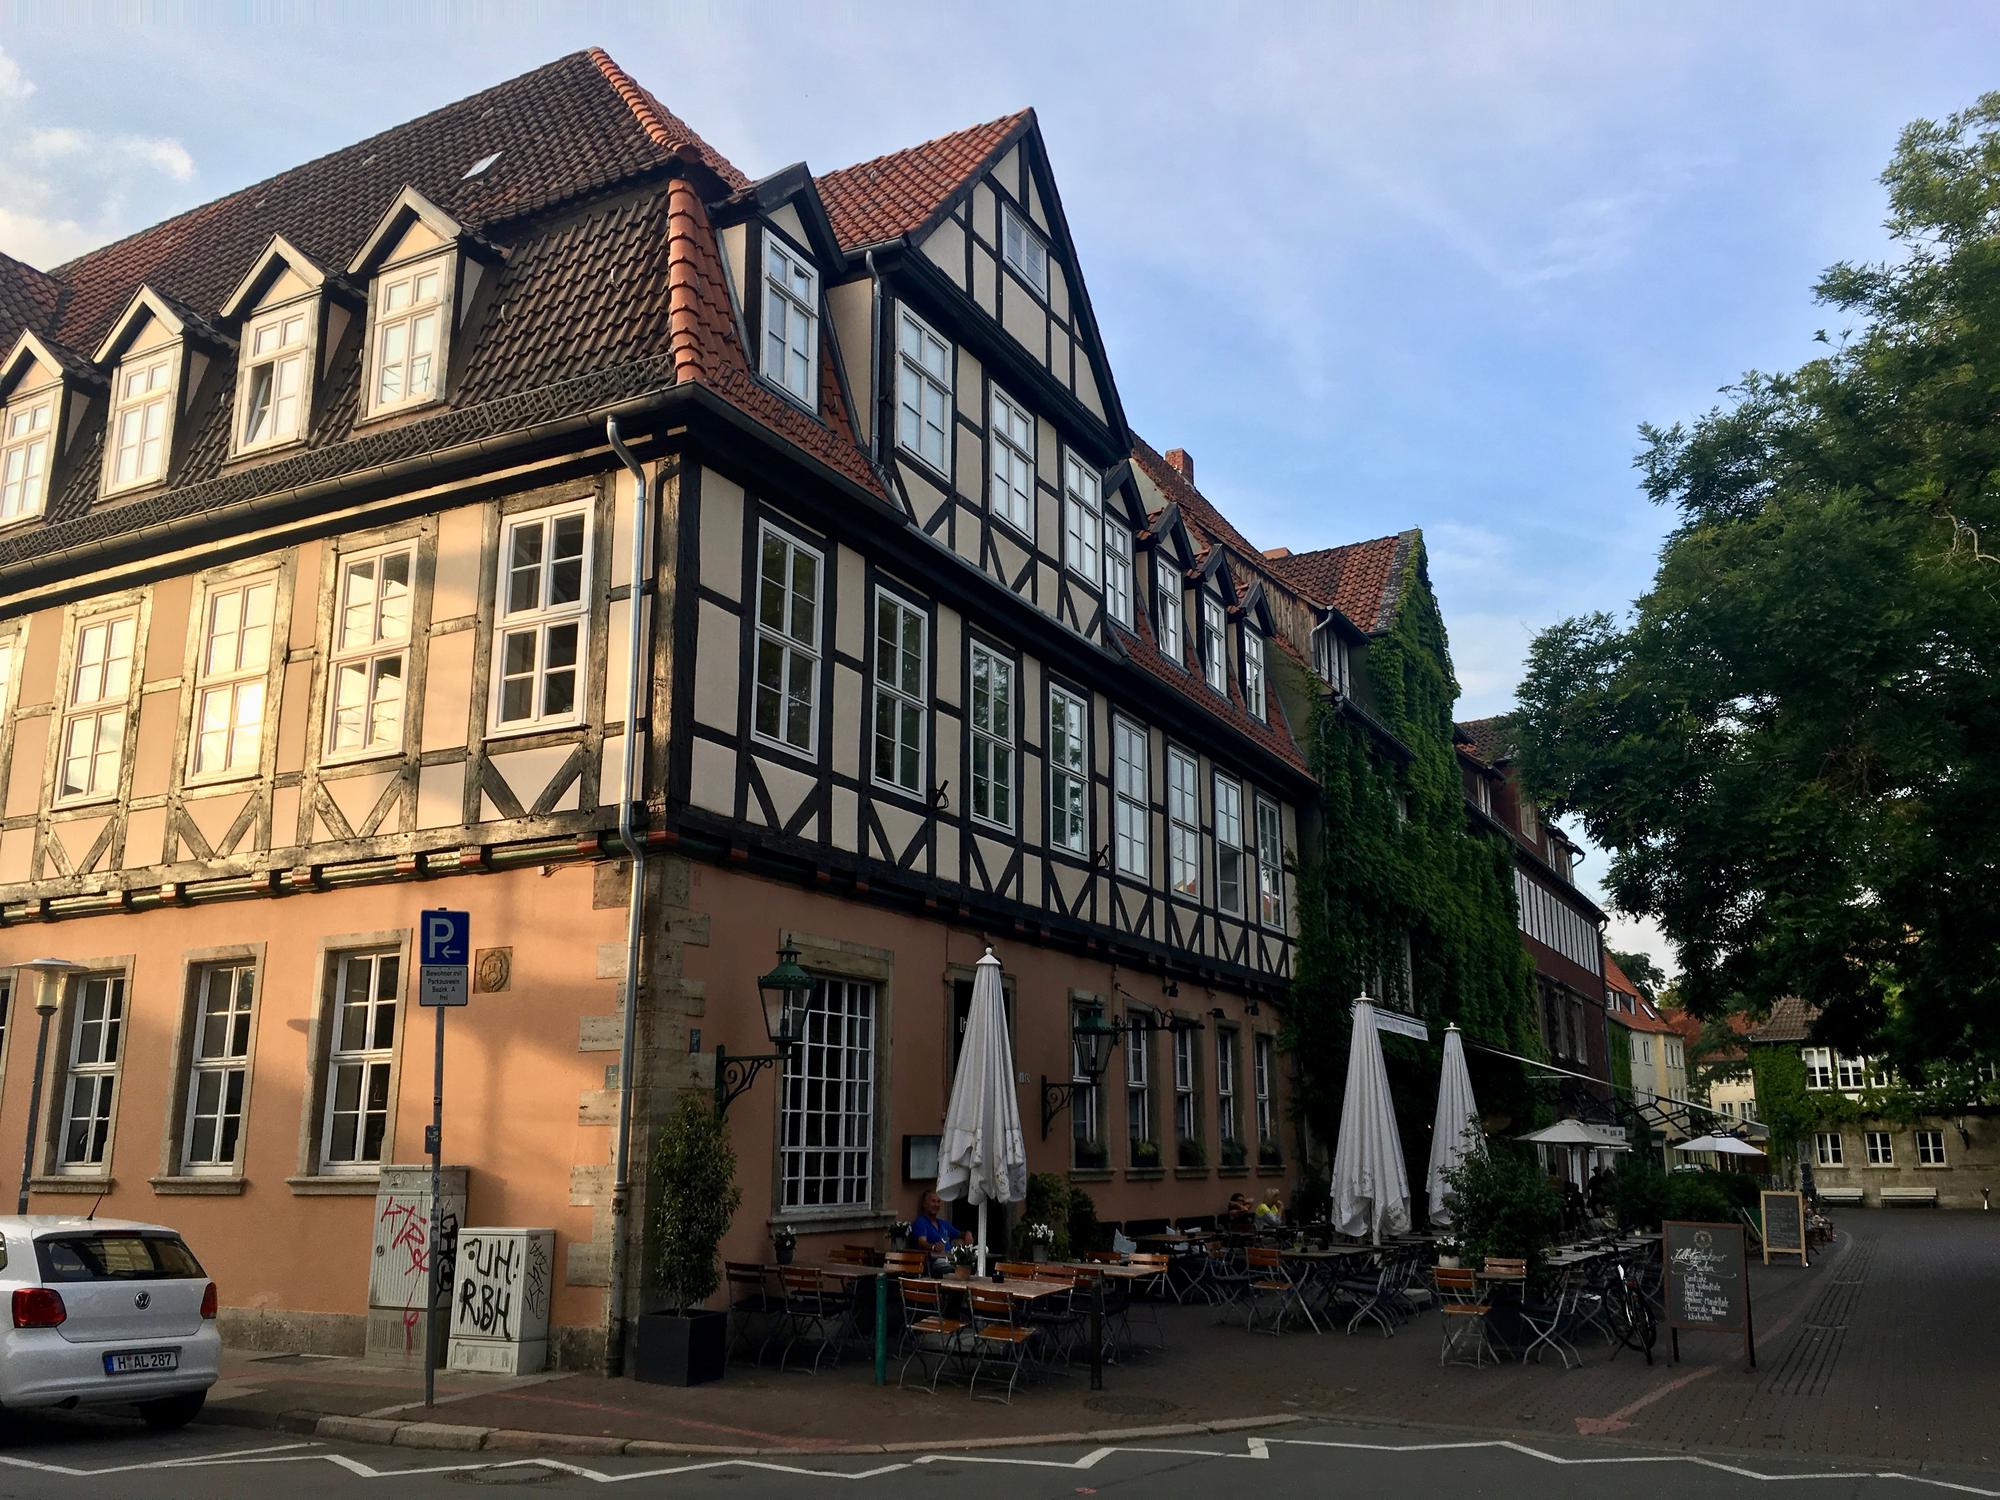 🇩🇪 Hanover, Germany, July 2017.